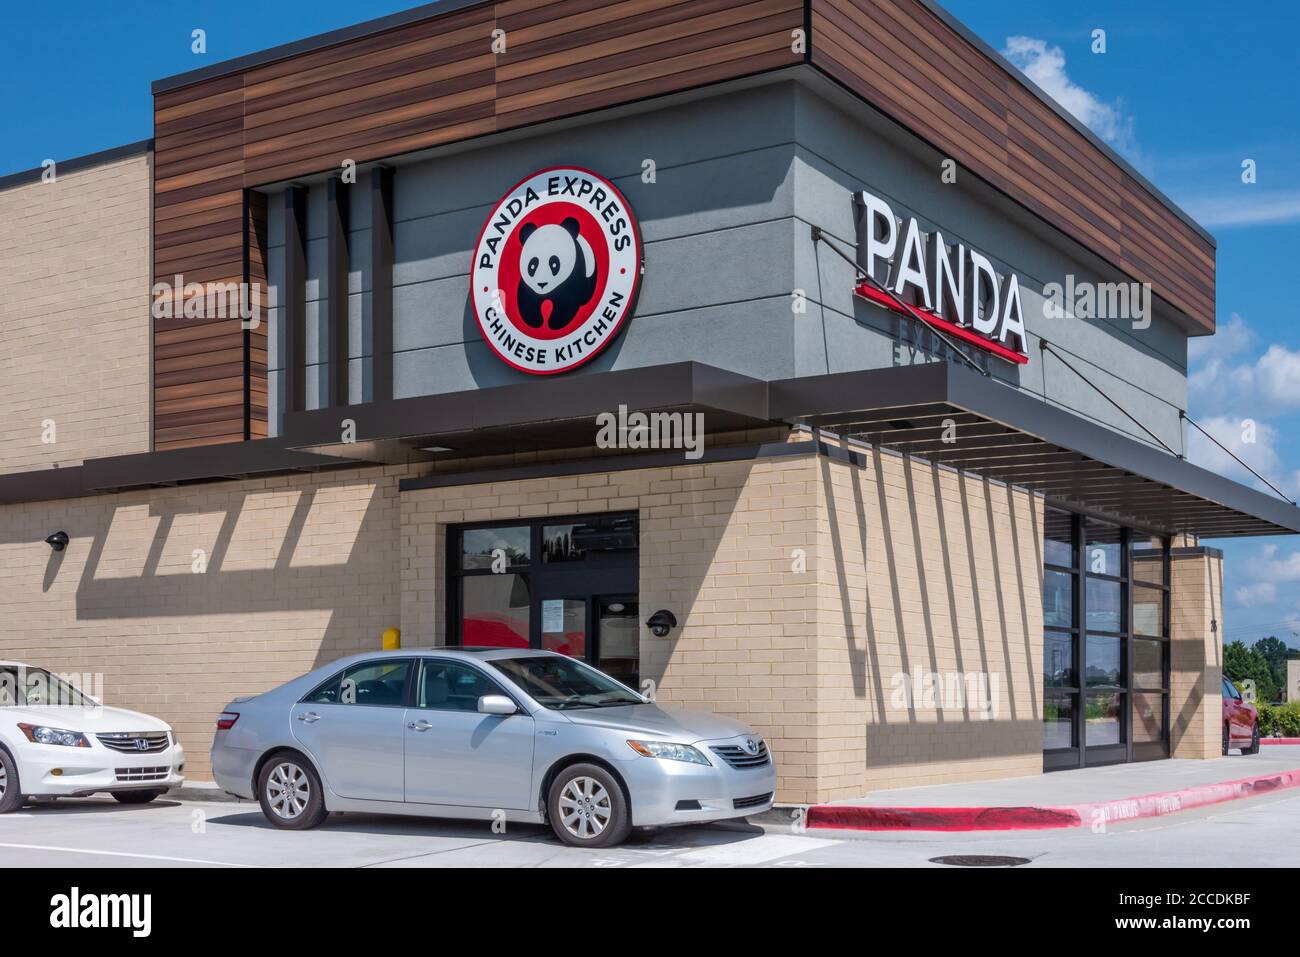 Le restaurant Panda Express offre un service de drive très actif tandis que les salles à manger sont fermées pendant la pandémie COVID-19. (ÉTATS-UNIS) Banque D'Images